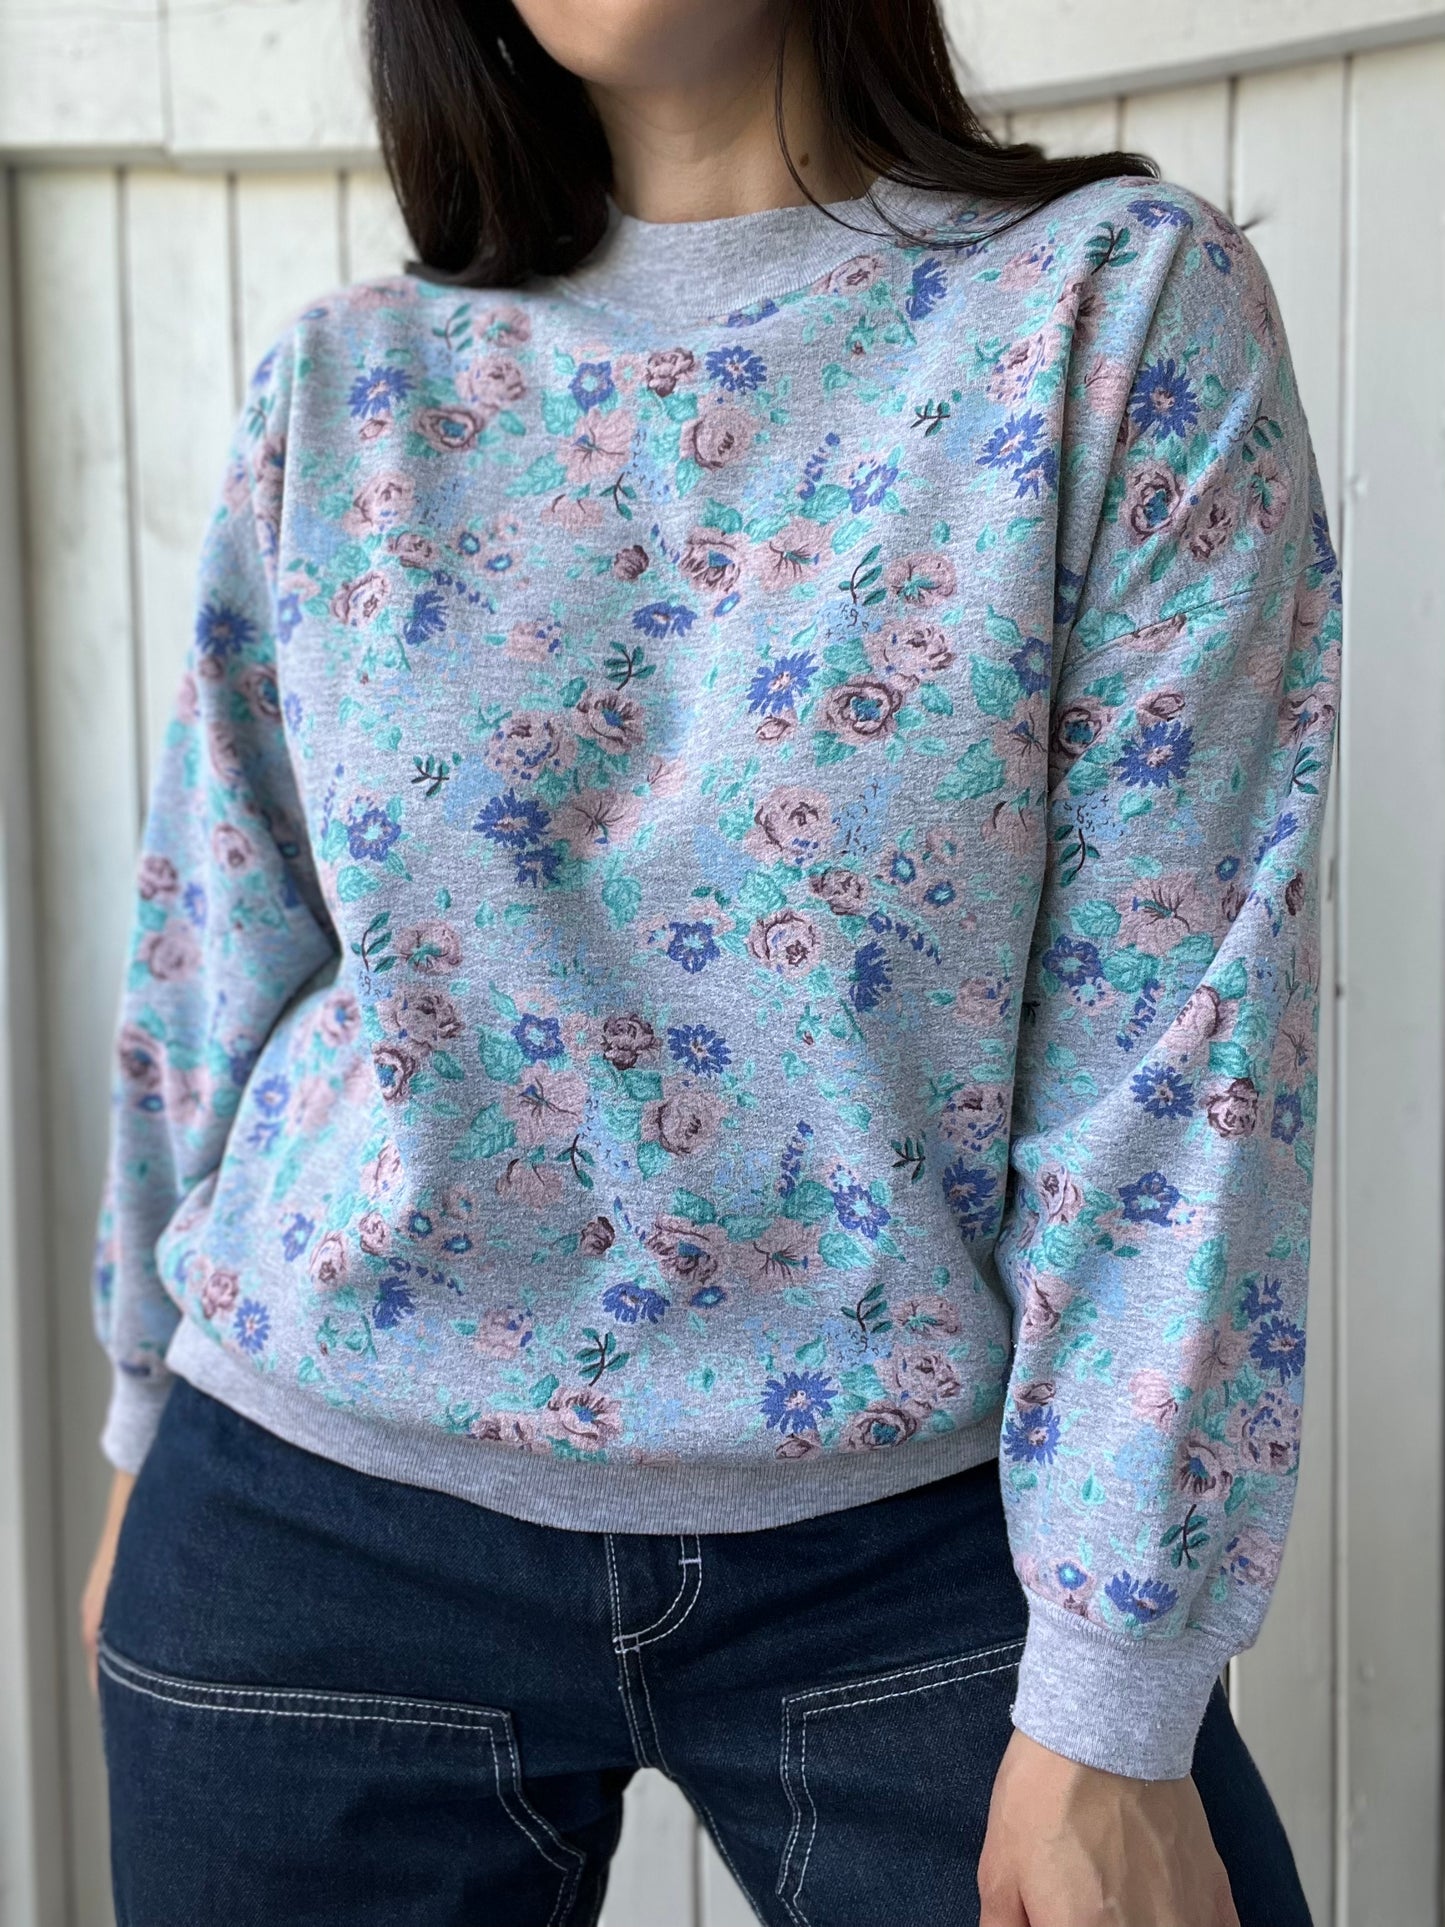 Vintage Floral Crewneck Sweater - Size M